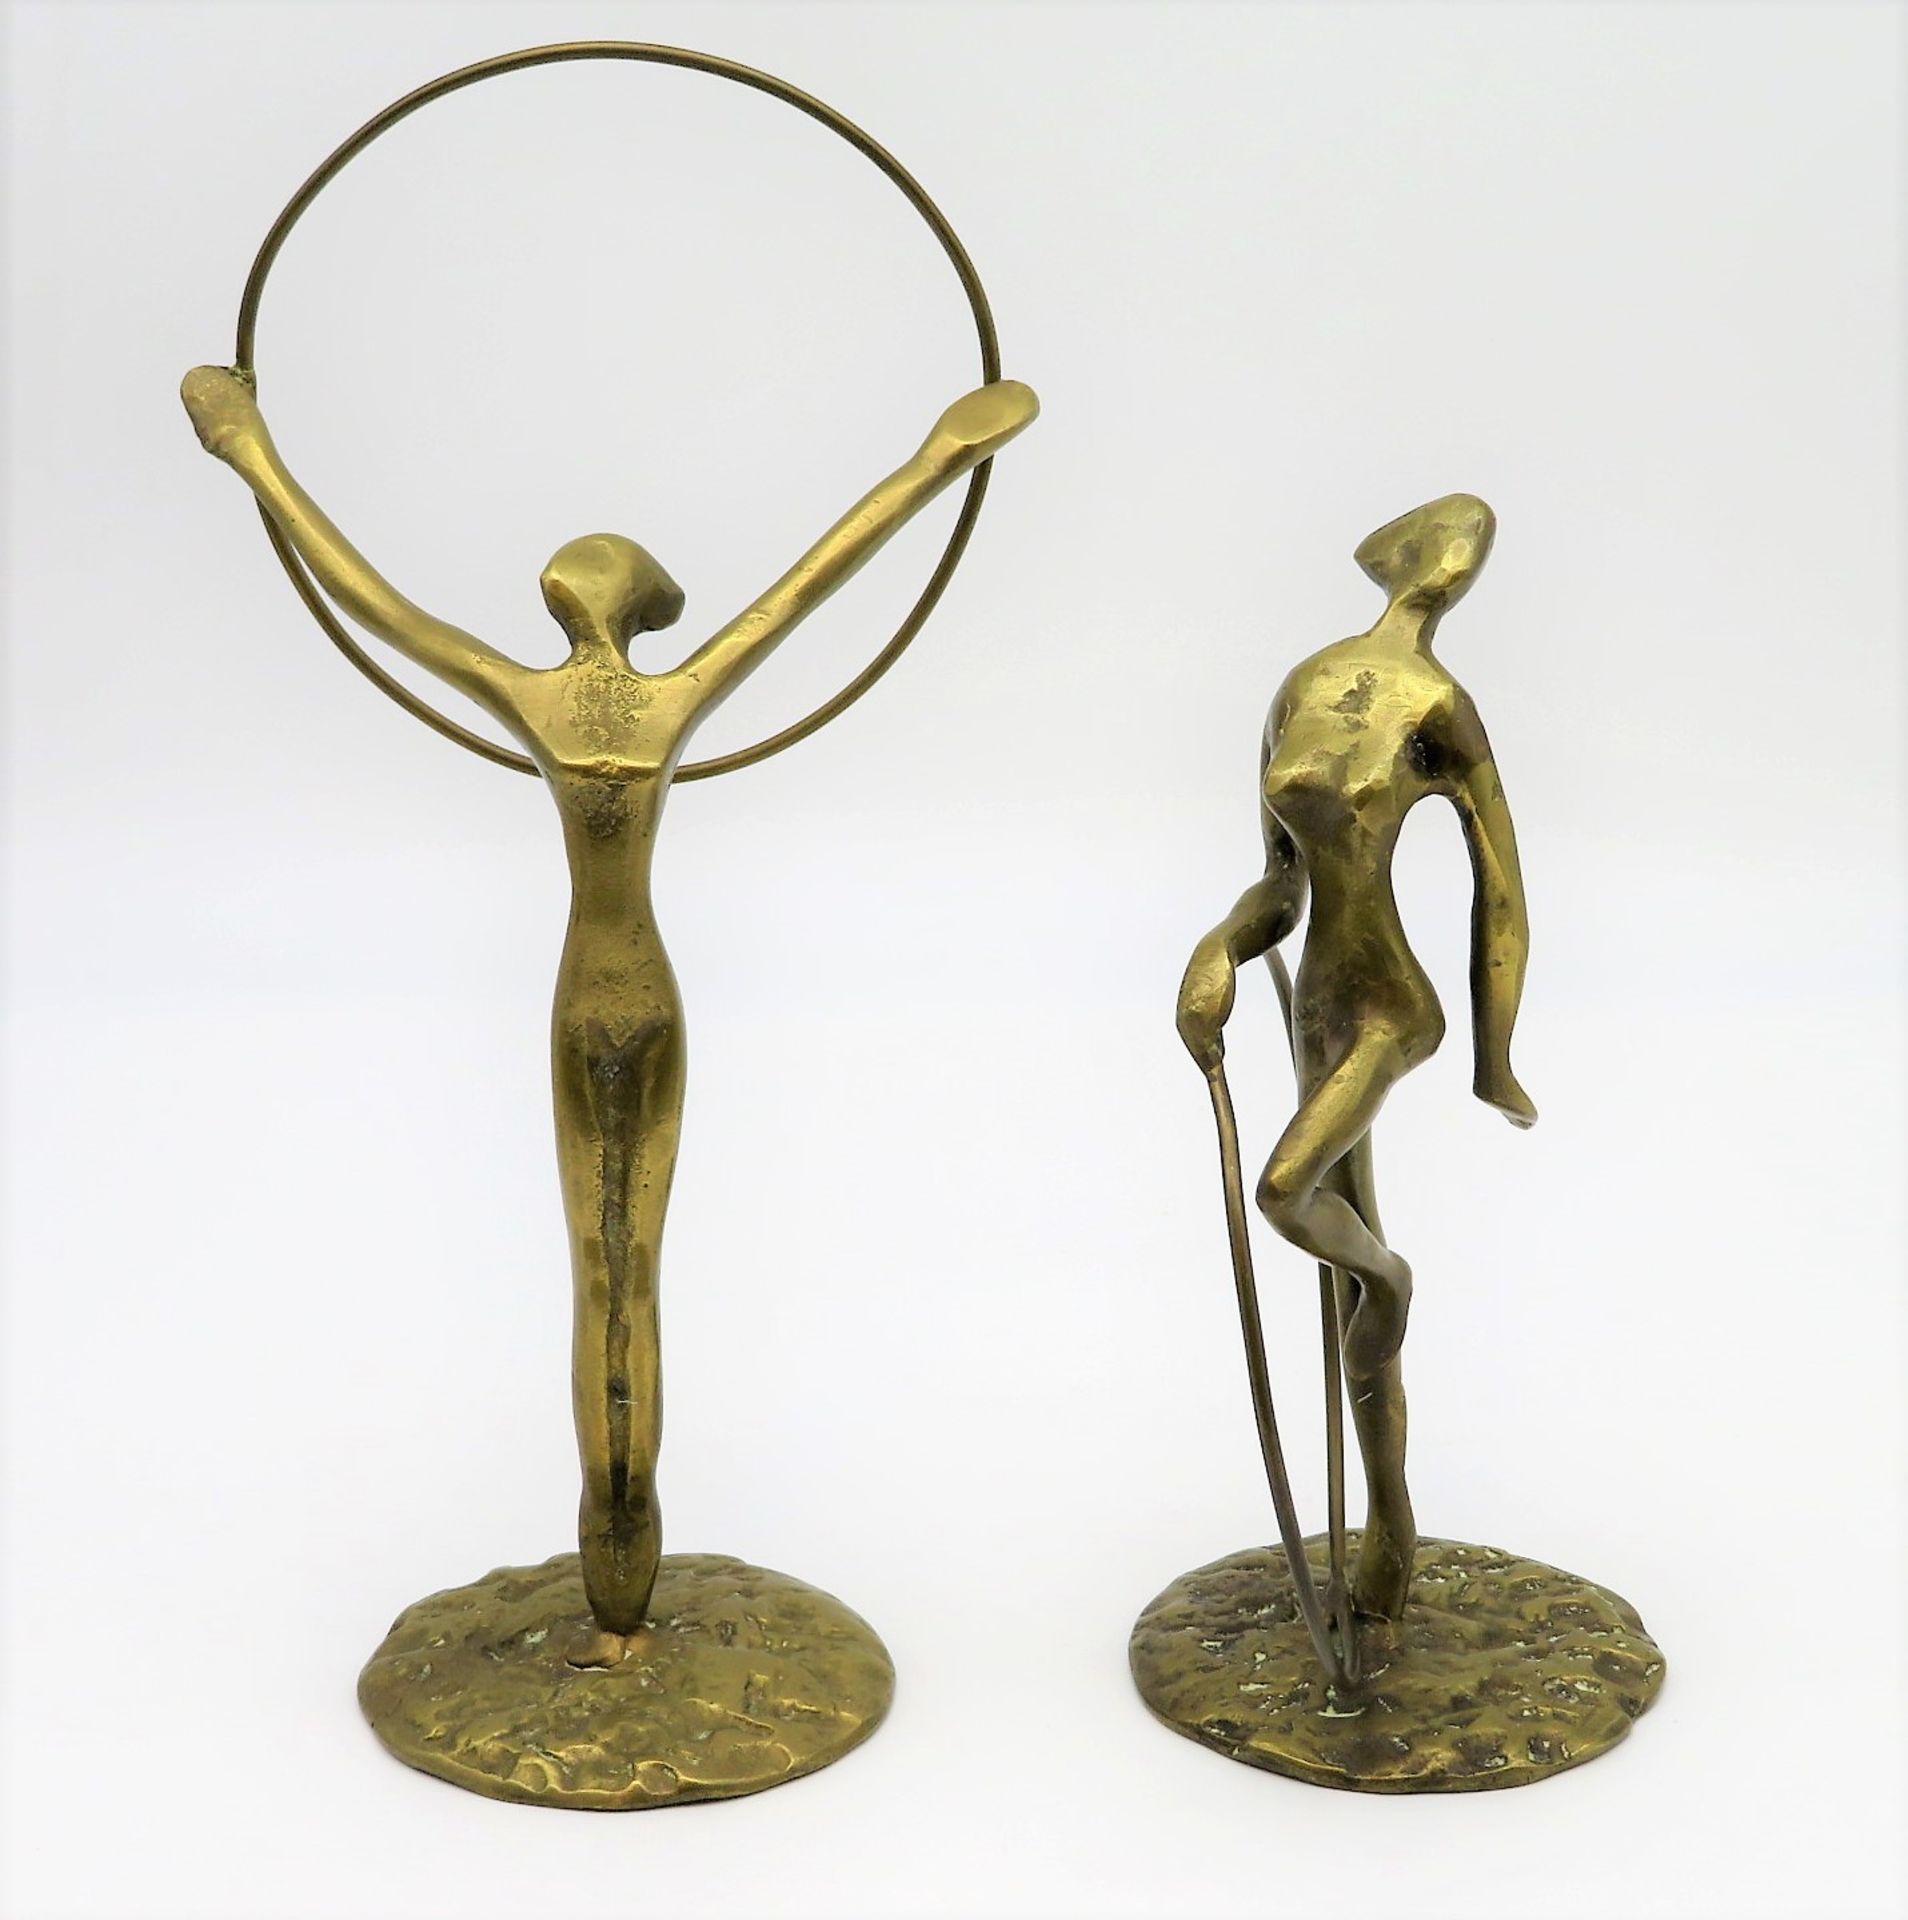 Unbekannt, 2 Turnerinnen mit Ringen, Bronze, h 20,5/28 cm.